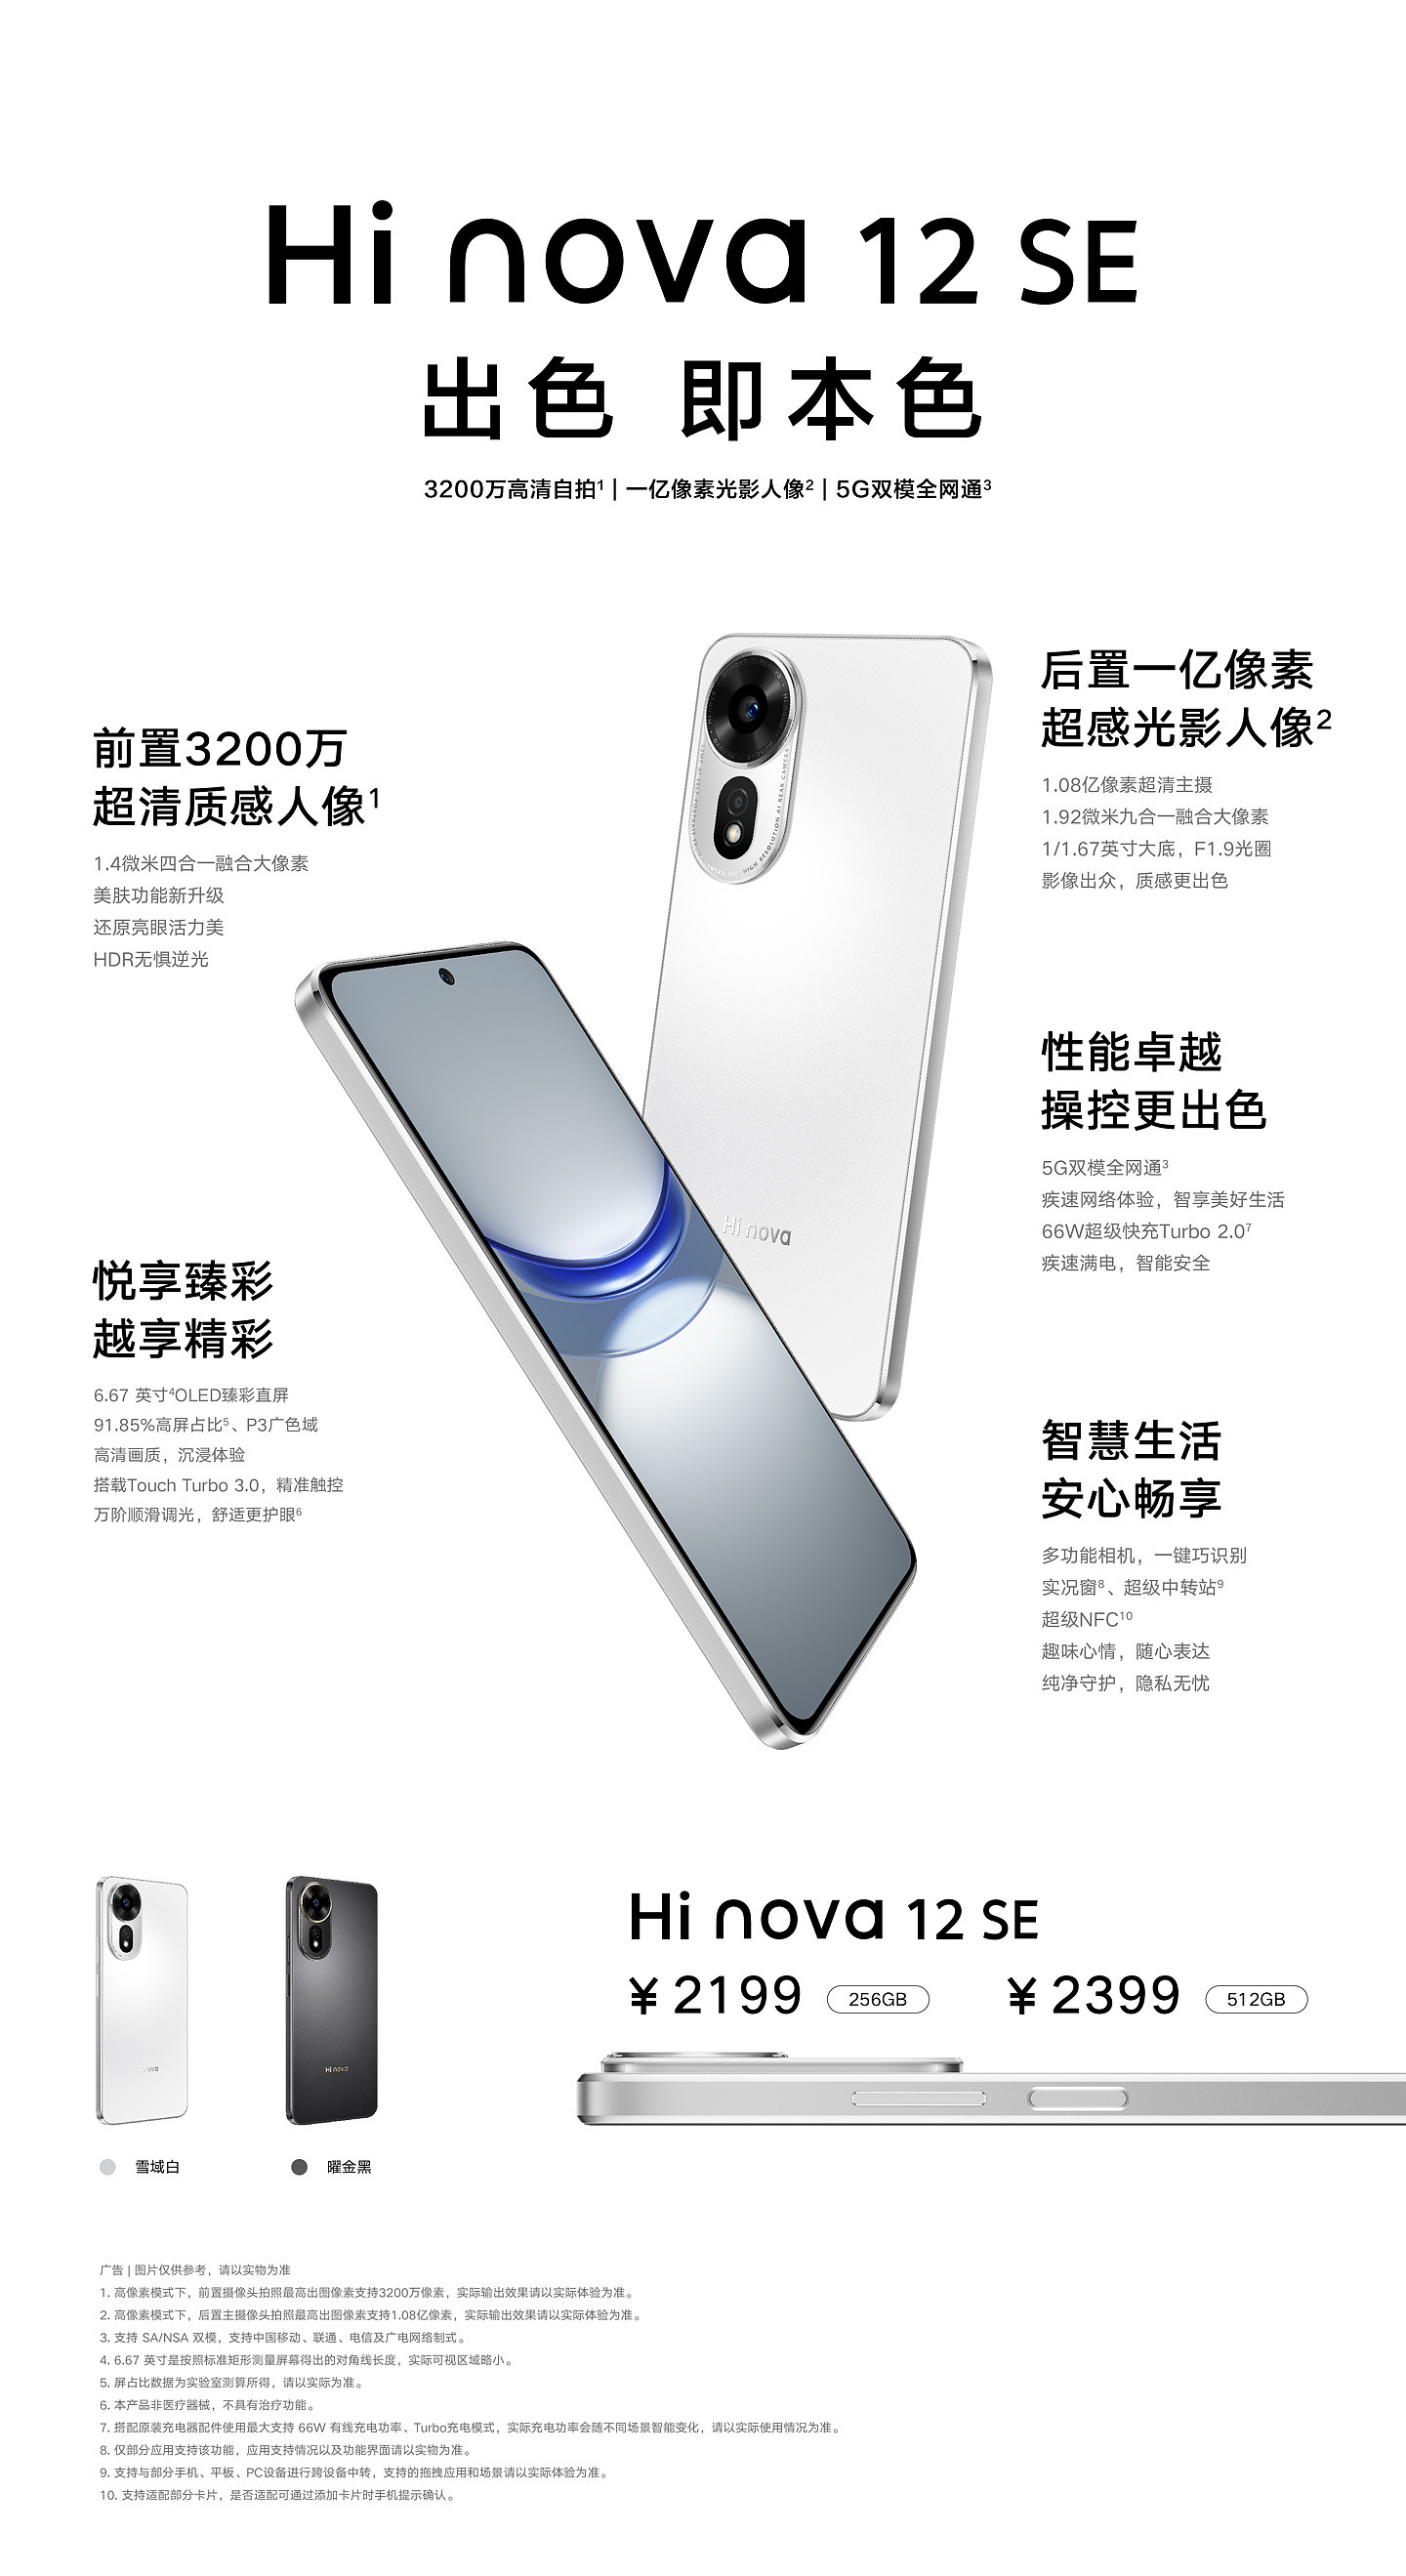 中邮通信 Hi nova 12 SE 手机现已开售，2199 元起 - 3